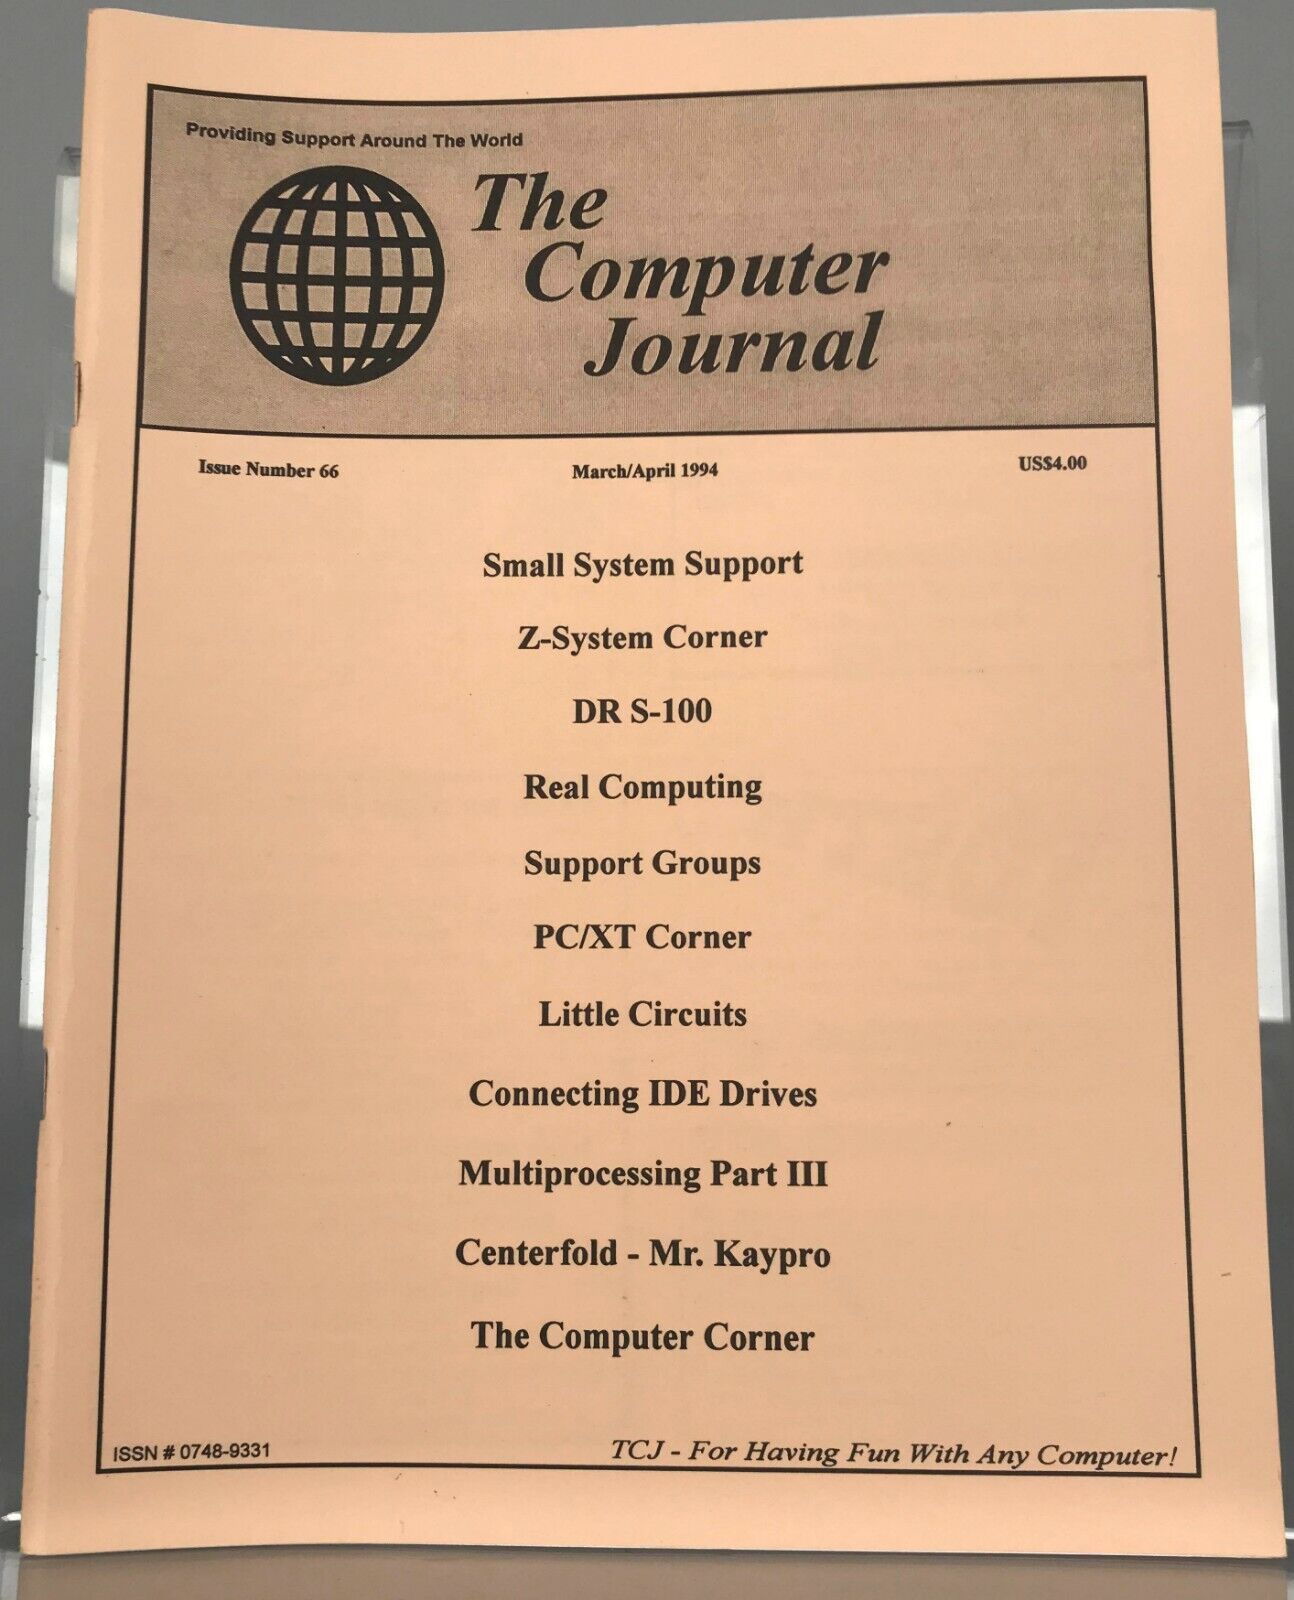 The Computer Journal - Issues 62 to 71 - 1993 to 1995 Specjalna cena krajowa